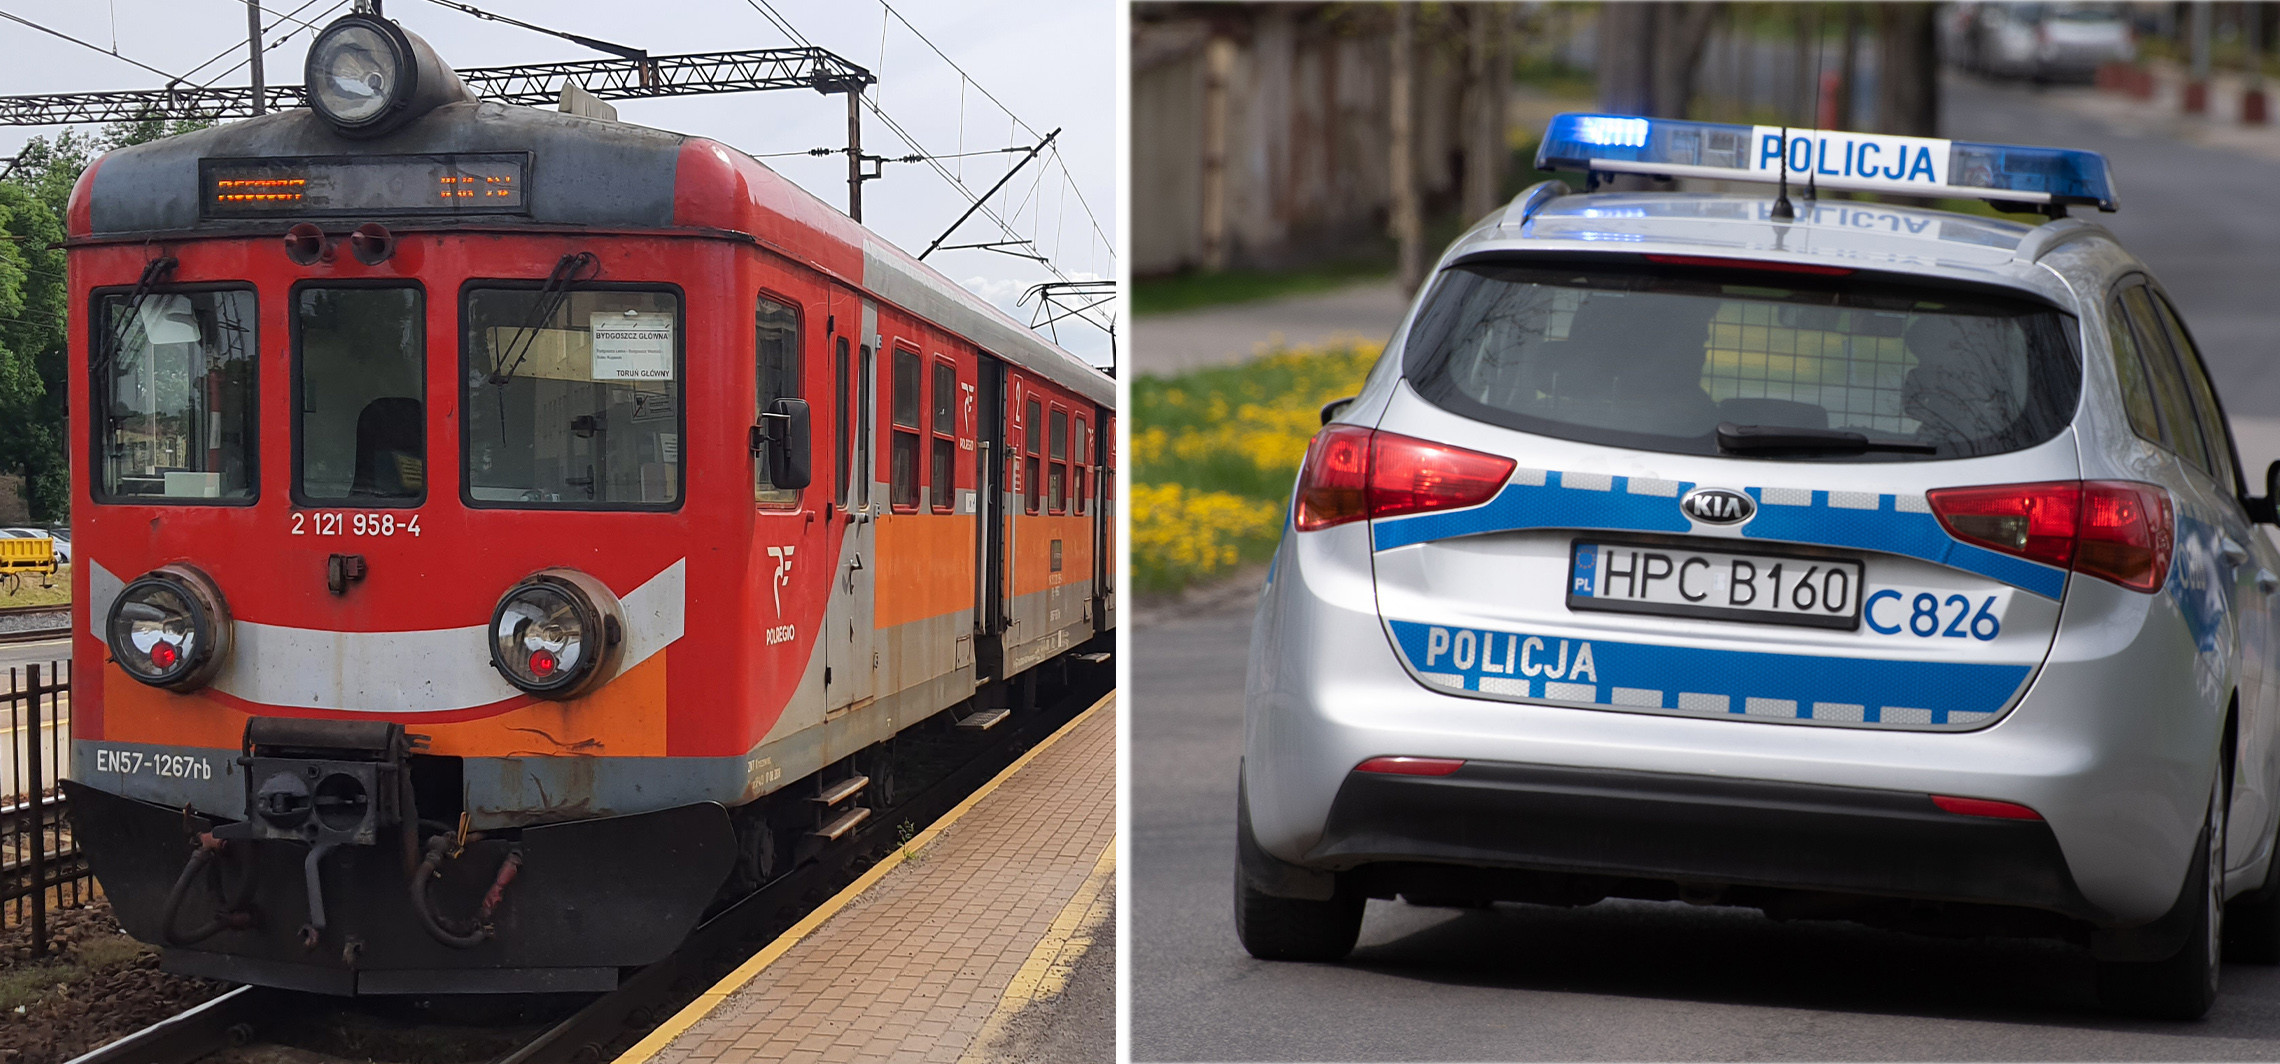 Inowrocław - Podróż pociągiem dla tej trójki zakończyła się wezwaniem policji